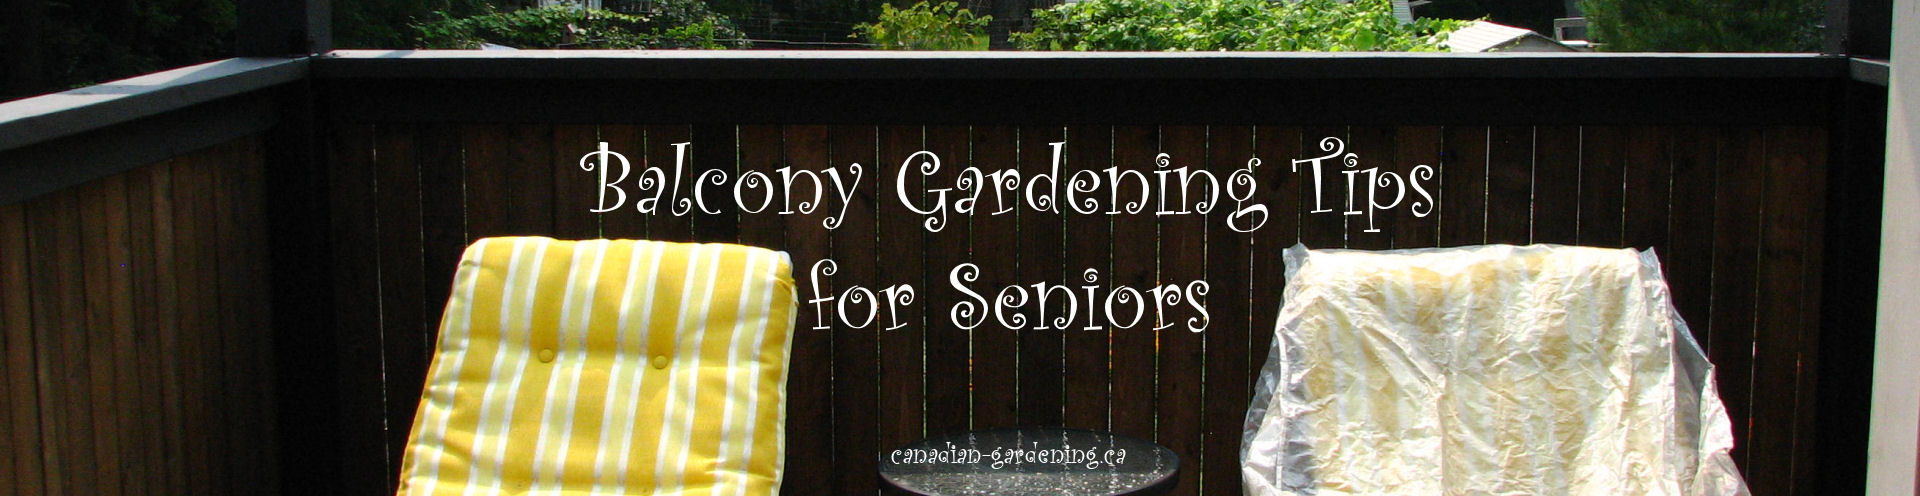 balcony gardening tips for seniors logo